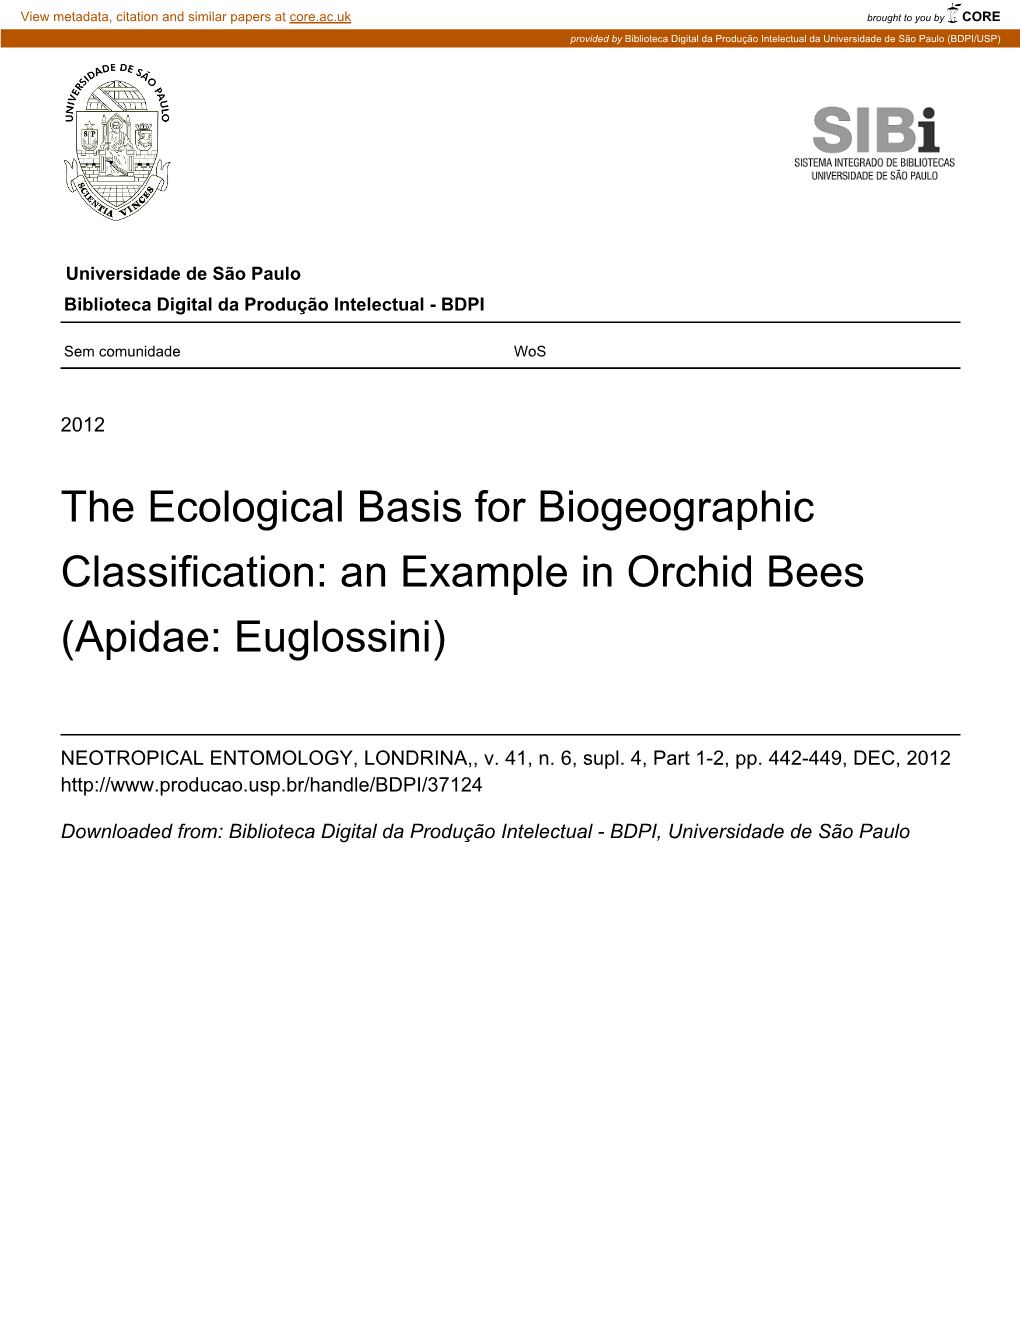 Apidae: Euglossini)